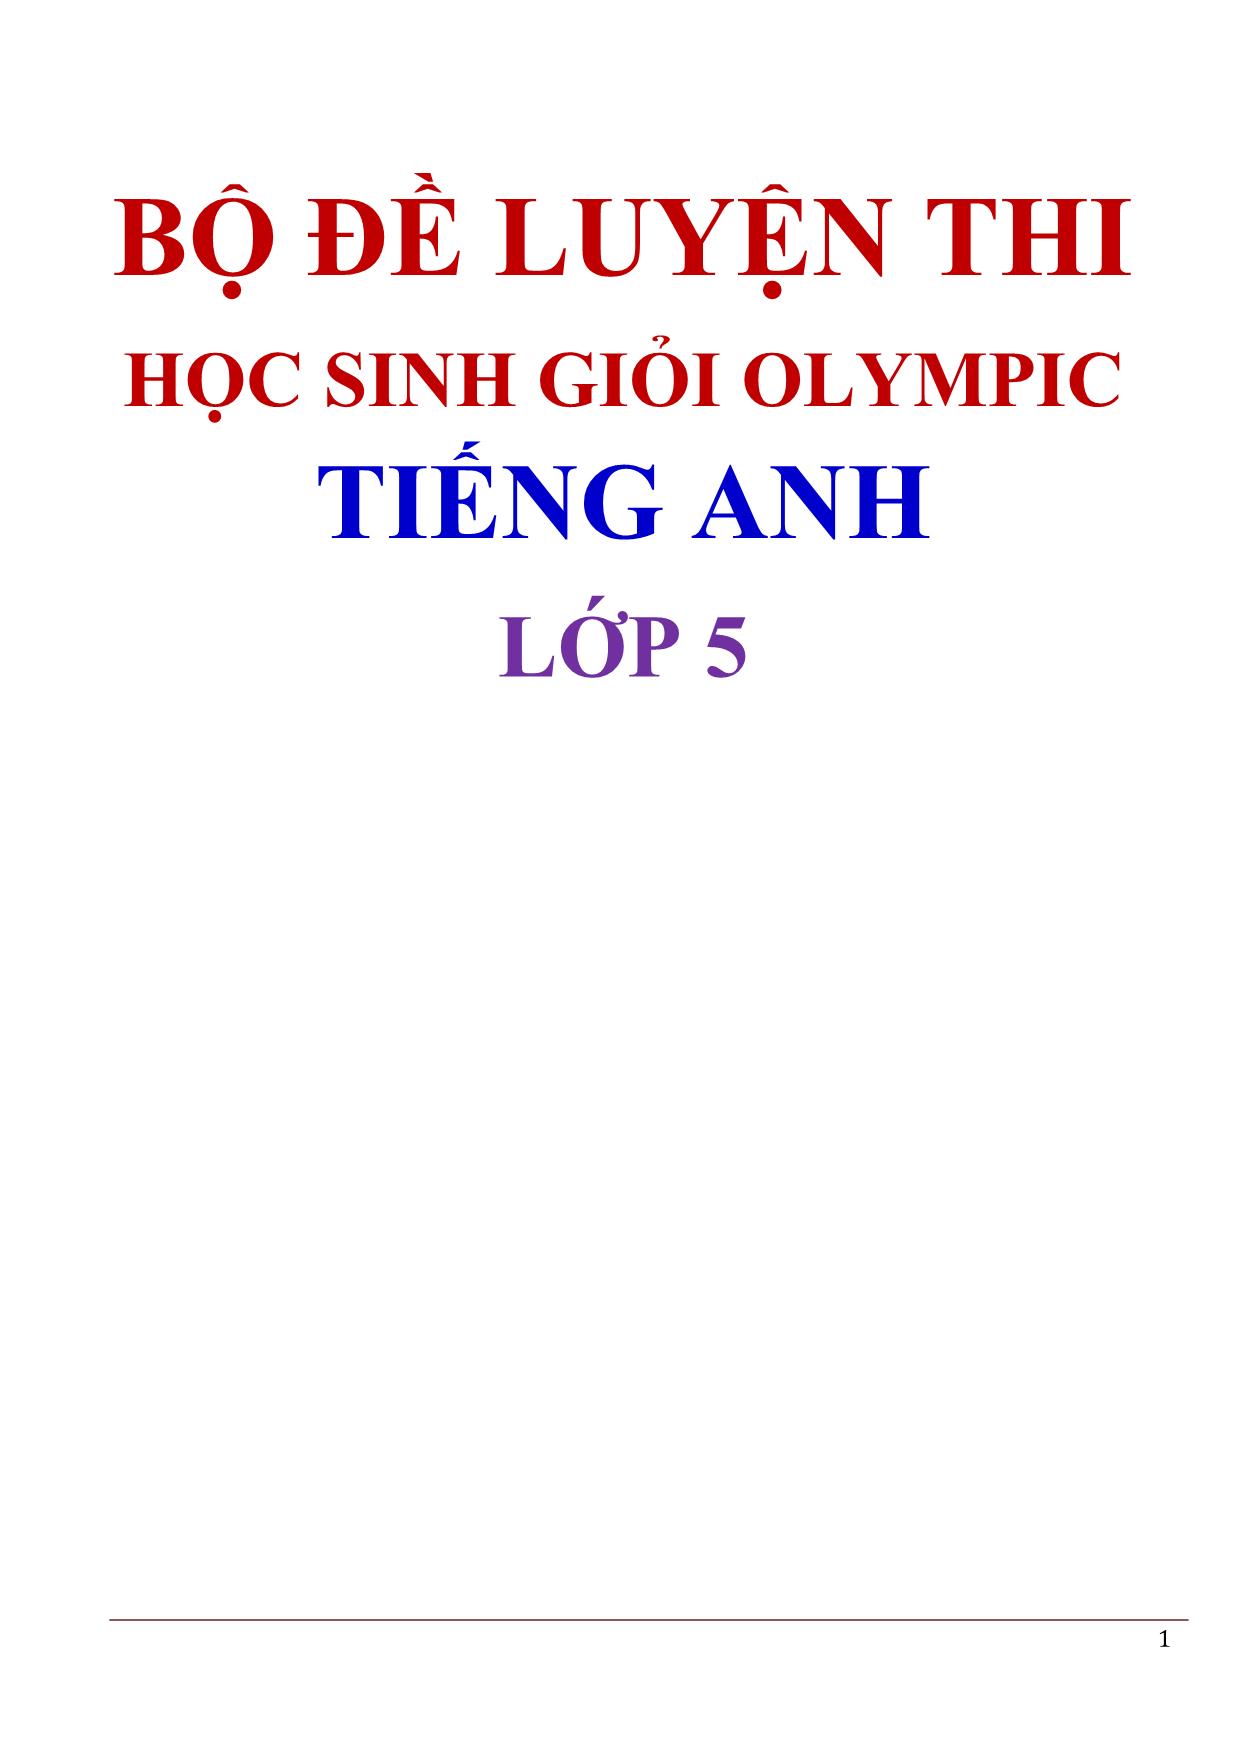 Bộ đề luyện thi học sinh giỏi Olympic Tiếng Anh Lớp 5 trang 1